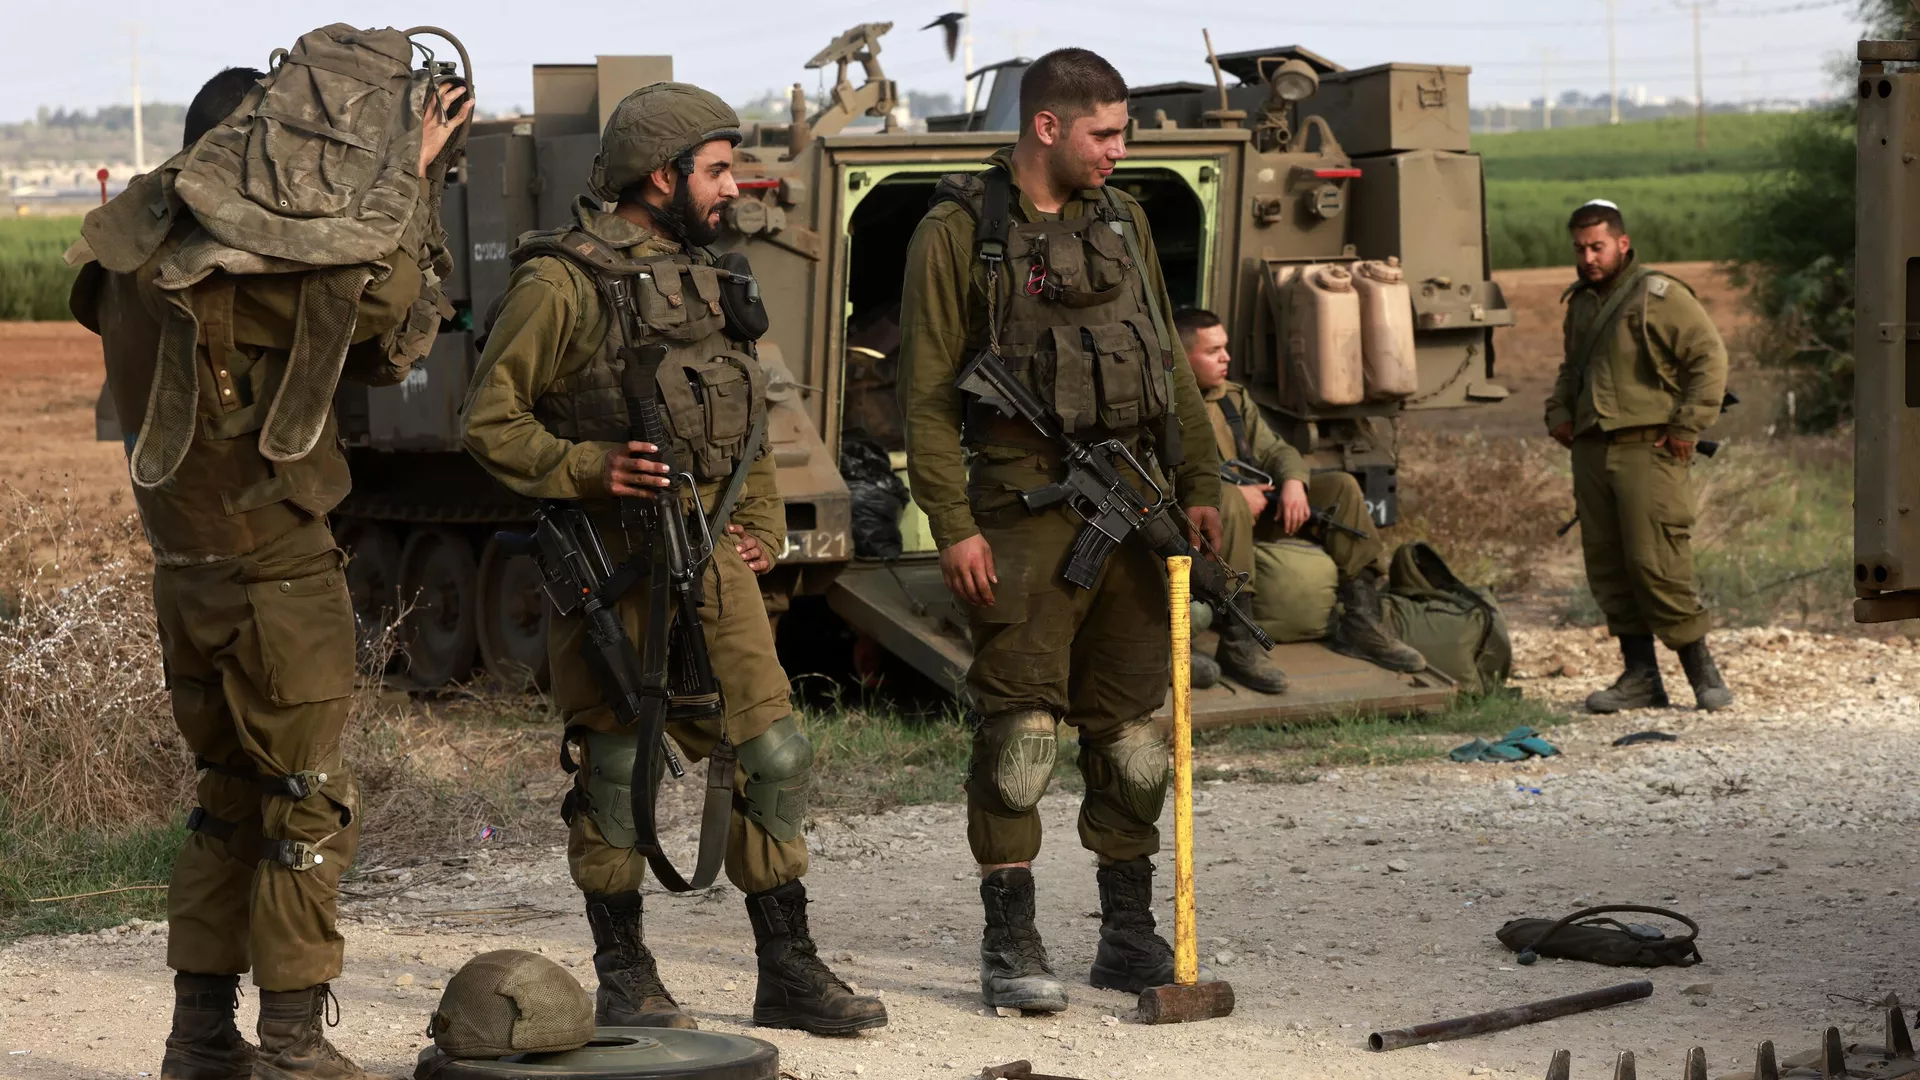 Իսրայելի պաշտպանության բանակը հայտարարել է, որ դեռևս չի վերահսկում իրավիճակը երկրում